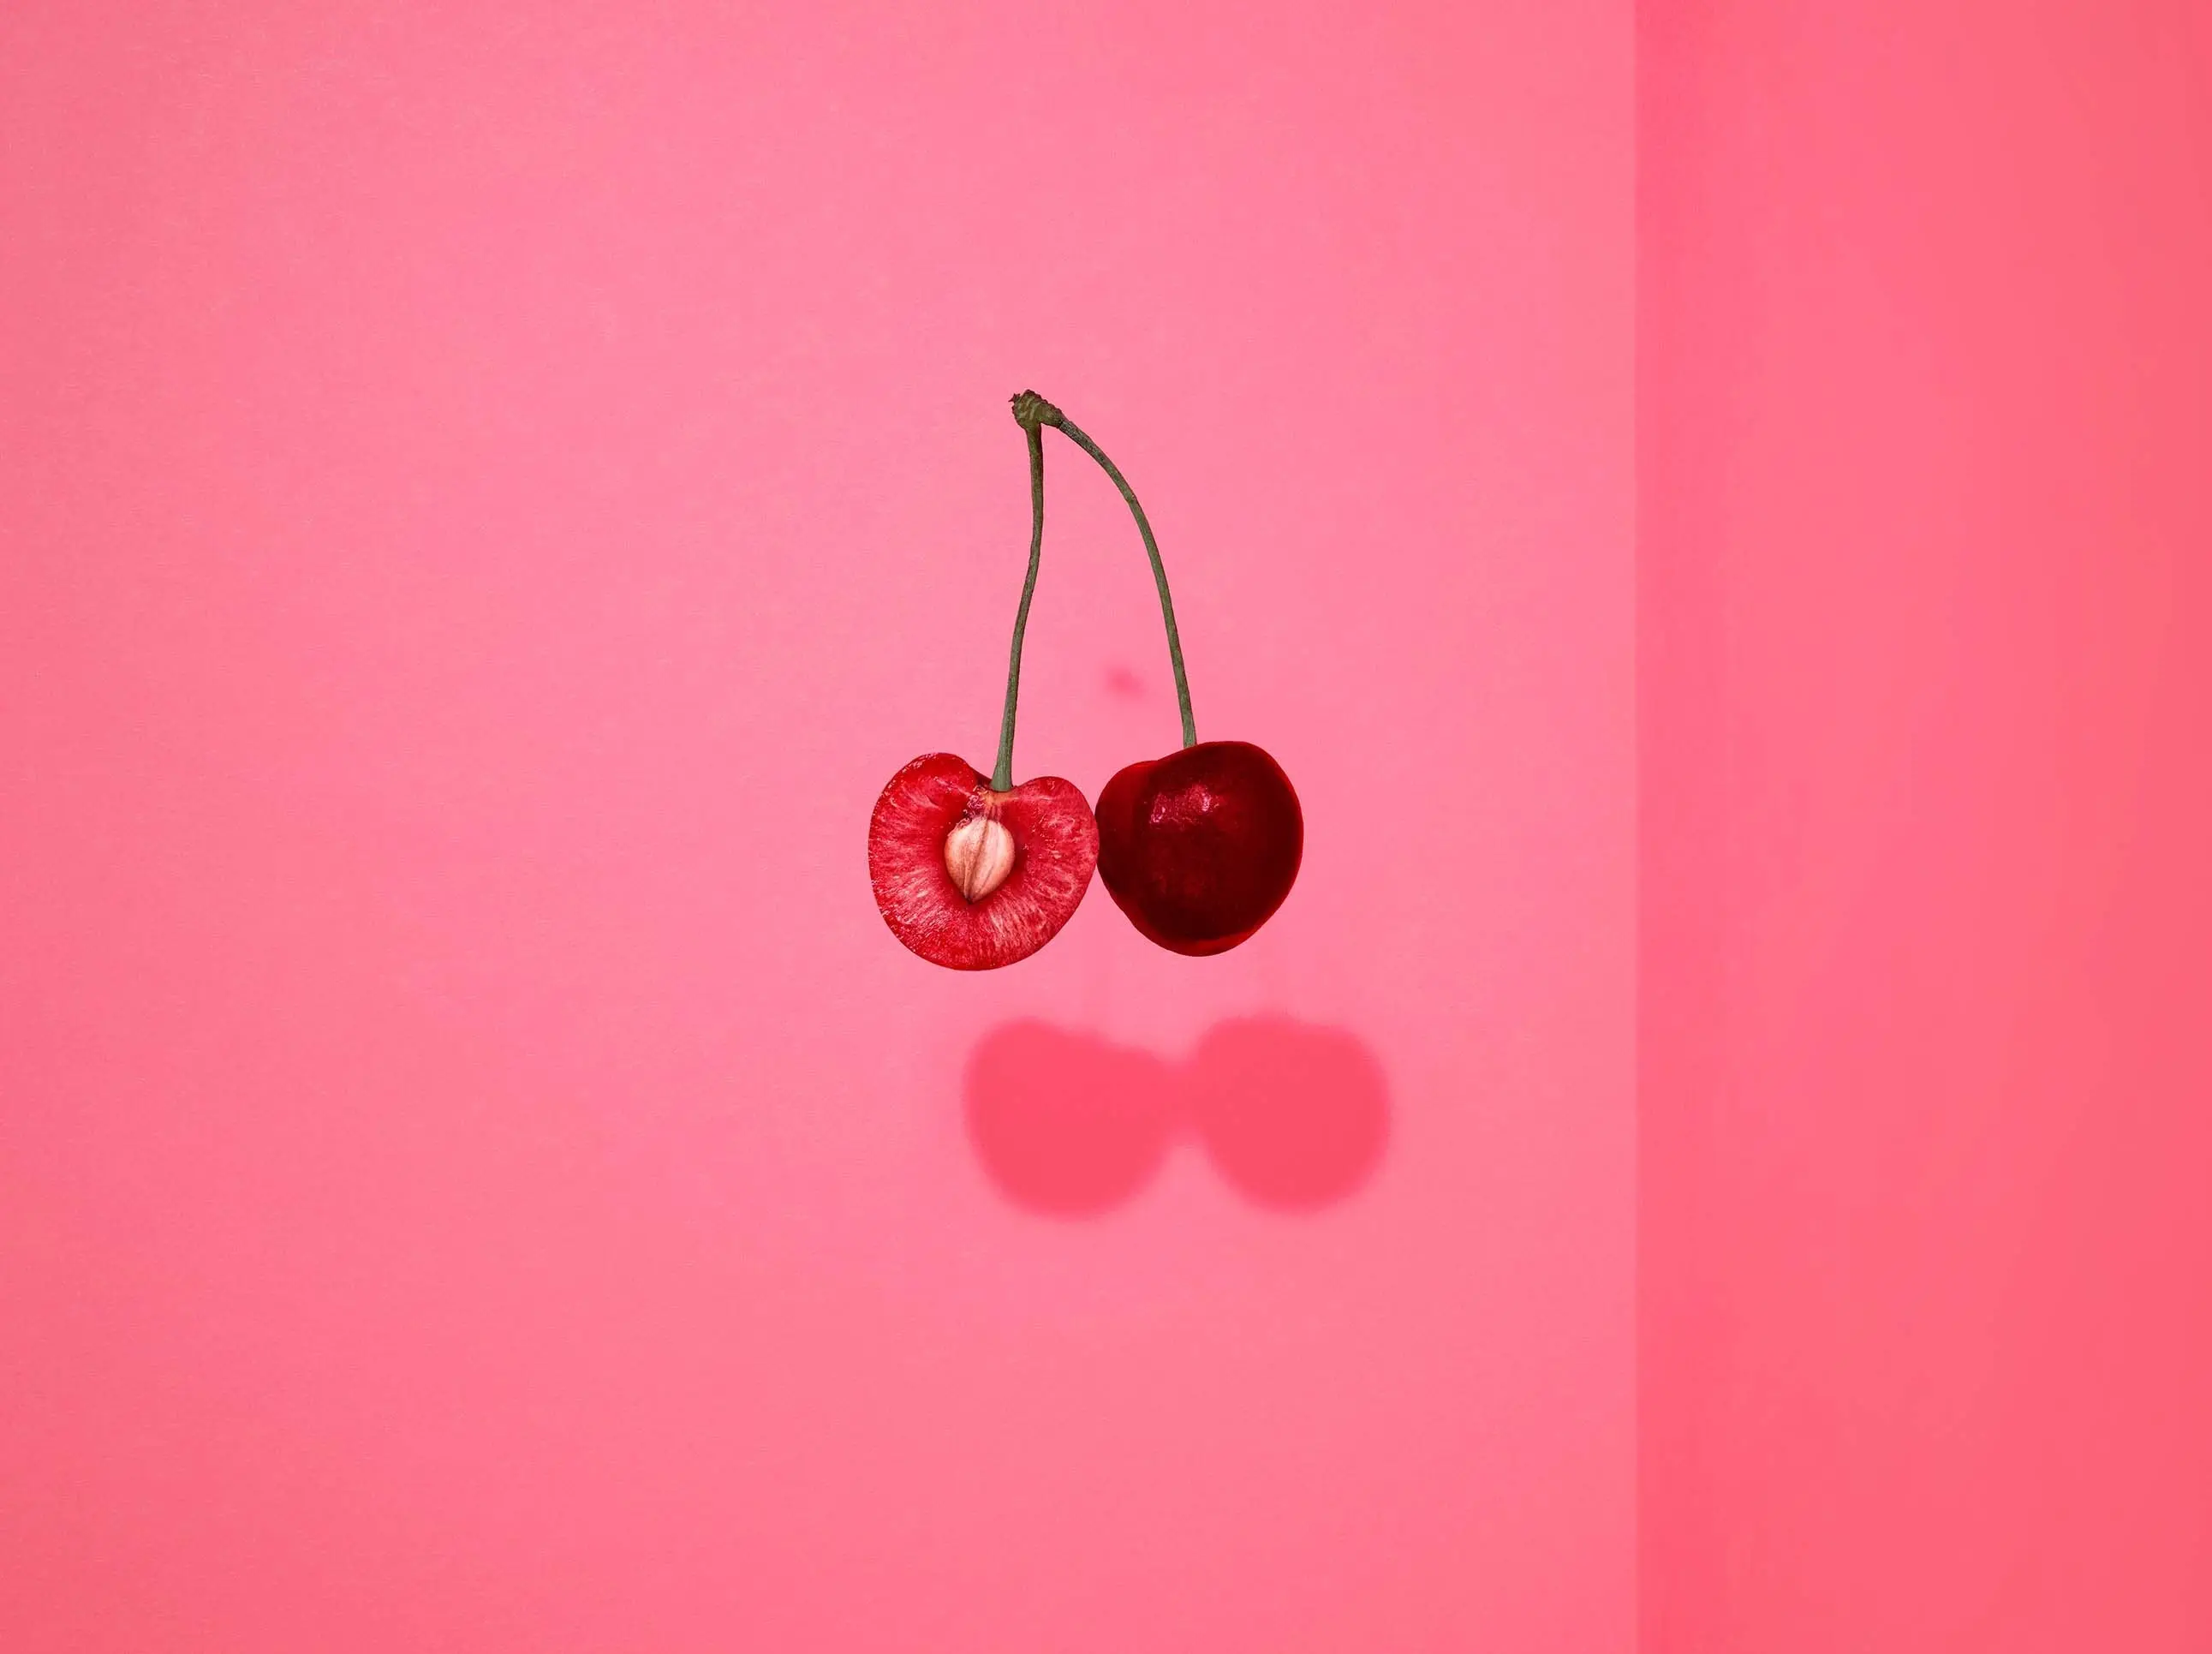 Cherry pods